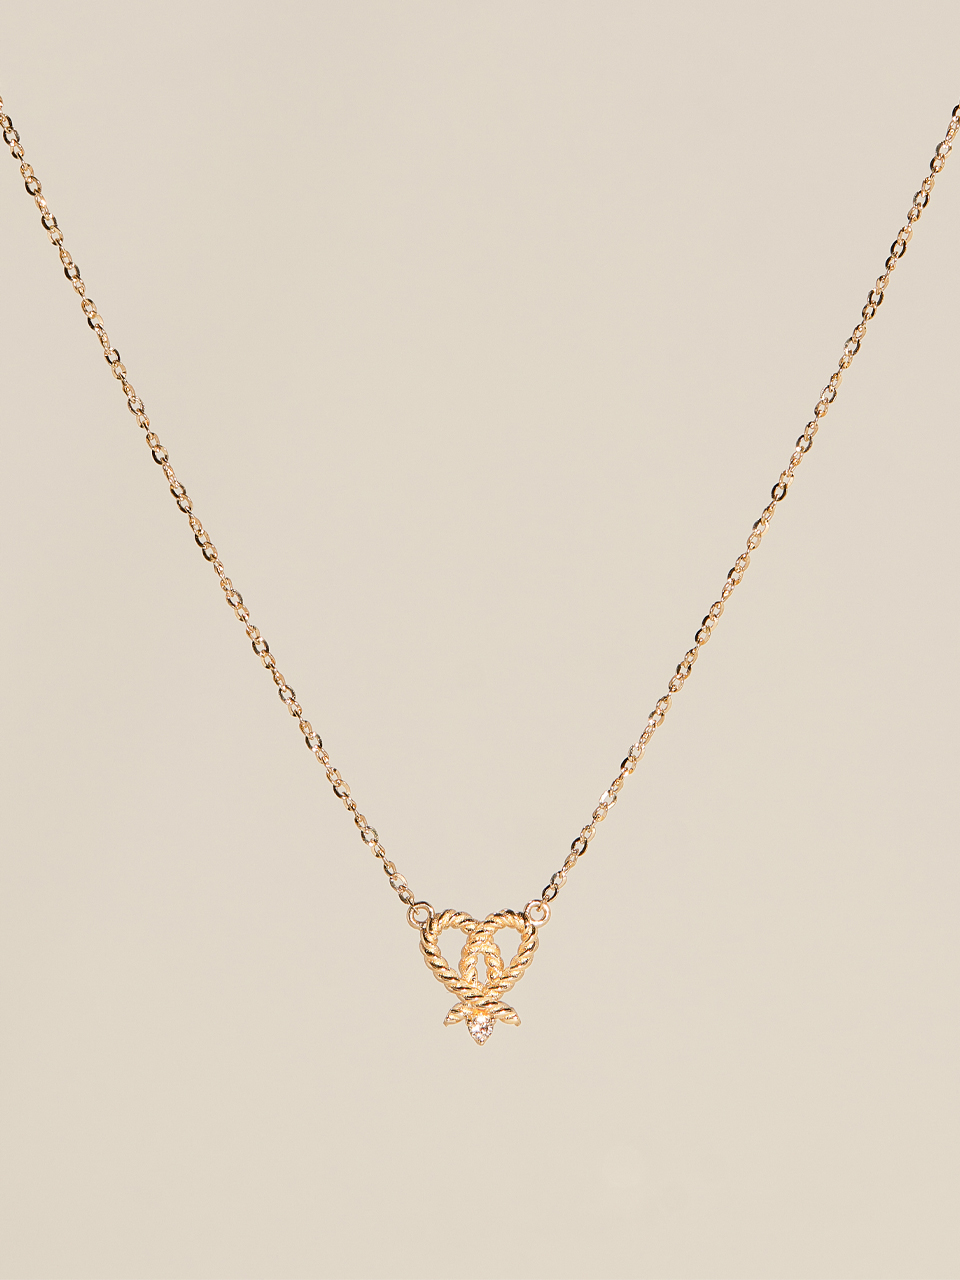 Paris Love Necklace